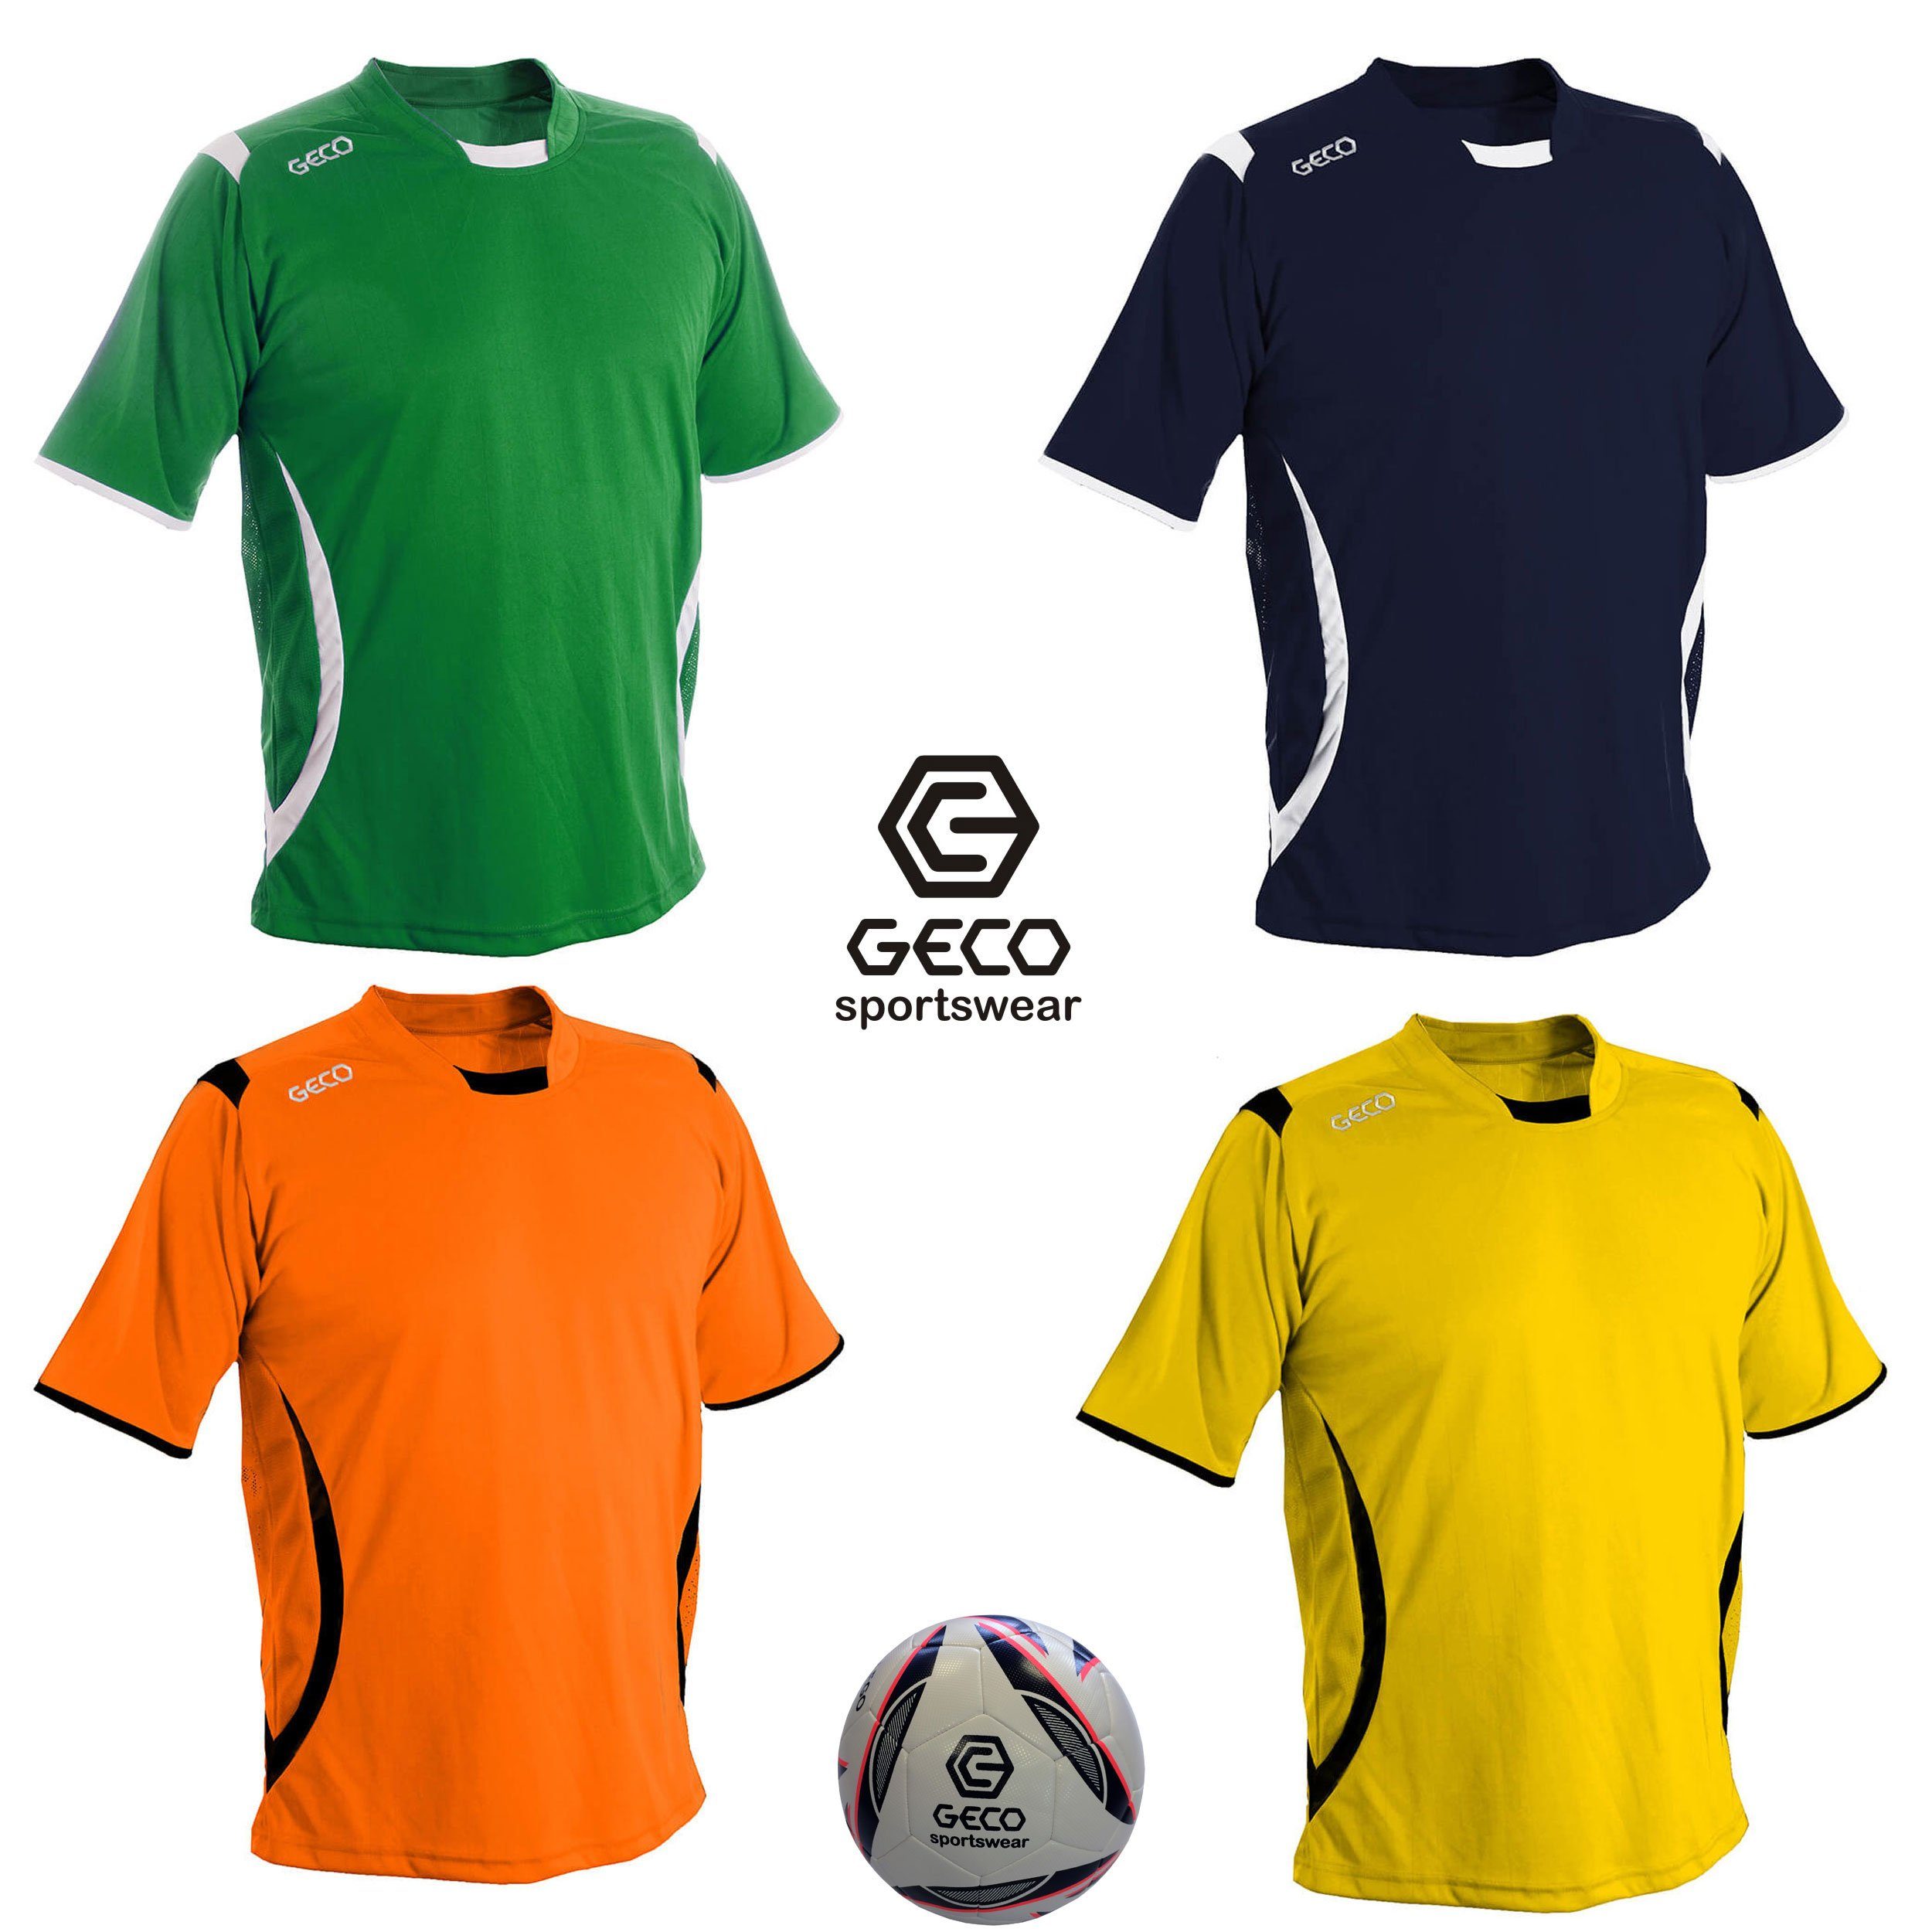 Geco Sportswear Fußballtrikot Fußballtrikot Geco Fußball Trikot Levante kurzarm zweifarbig seitliche Mesh Einsätze gelb/schwarz